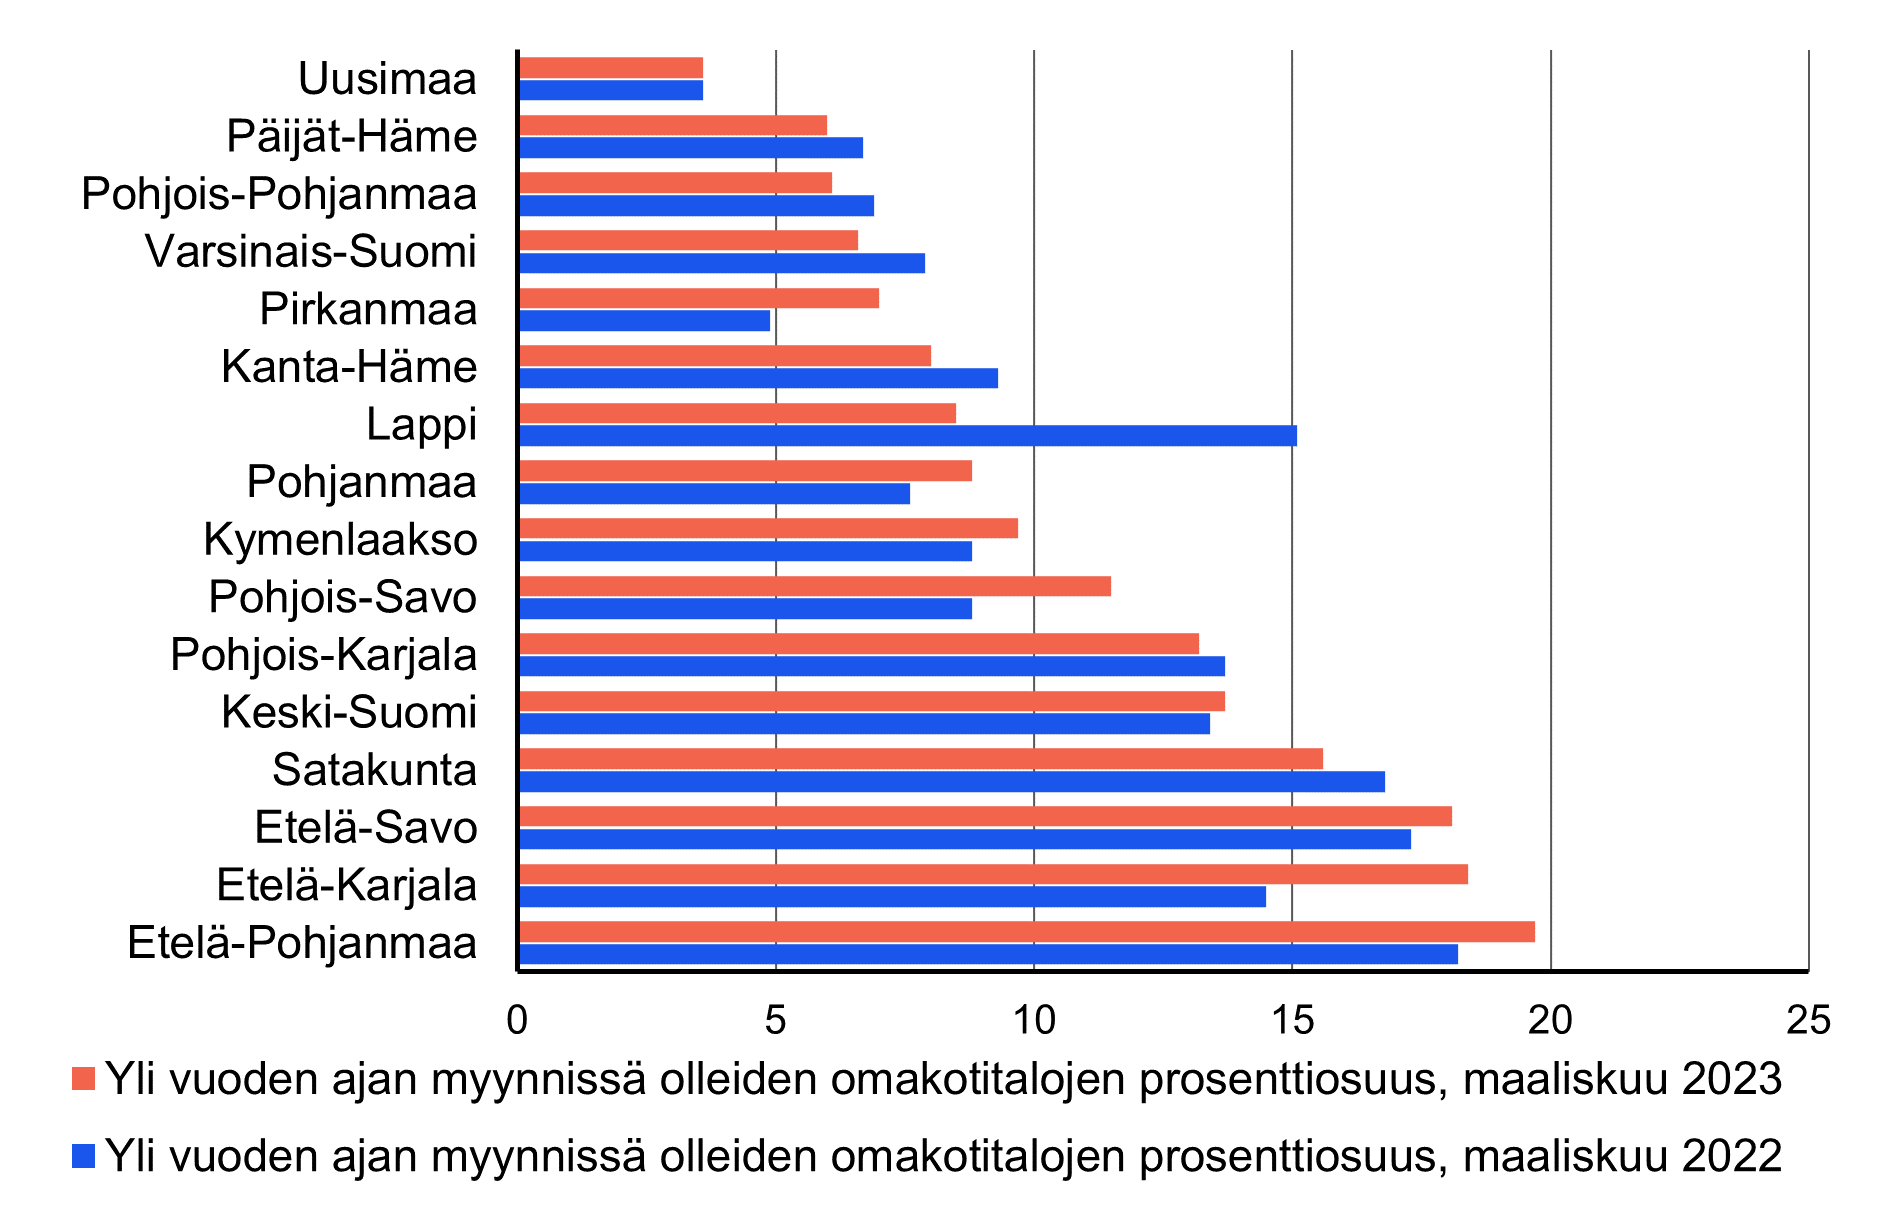 Vaakapylväskaavio yli vuoden ajan myynnissä olleiden omakotitalojen osuuksista maakunnissa. Vähiten yli vuoden ajan myynnissä olleita koteja oli Uudellamaalla. Etelä-Pohjanmaalla osuus oli suurin.